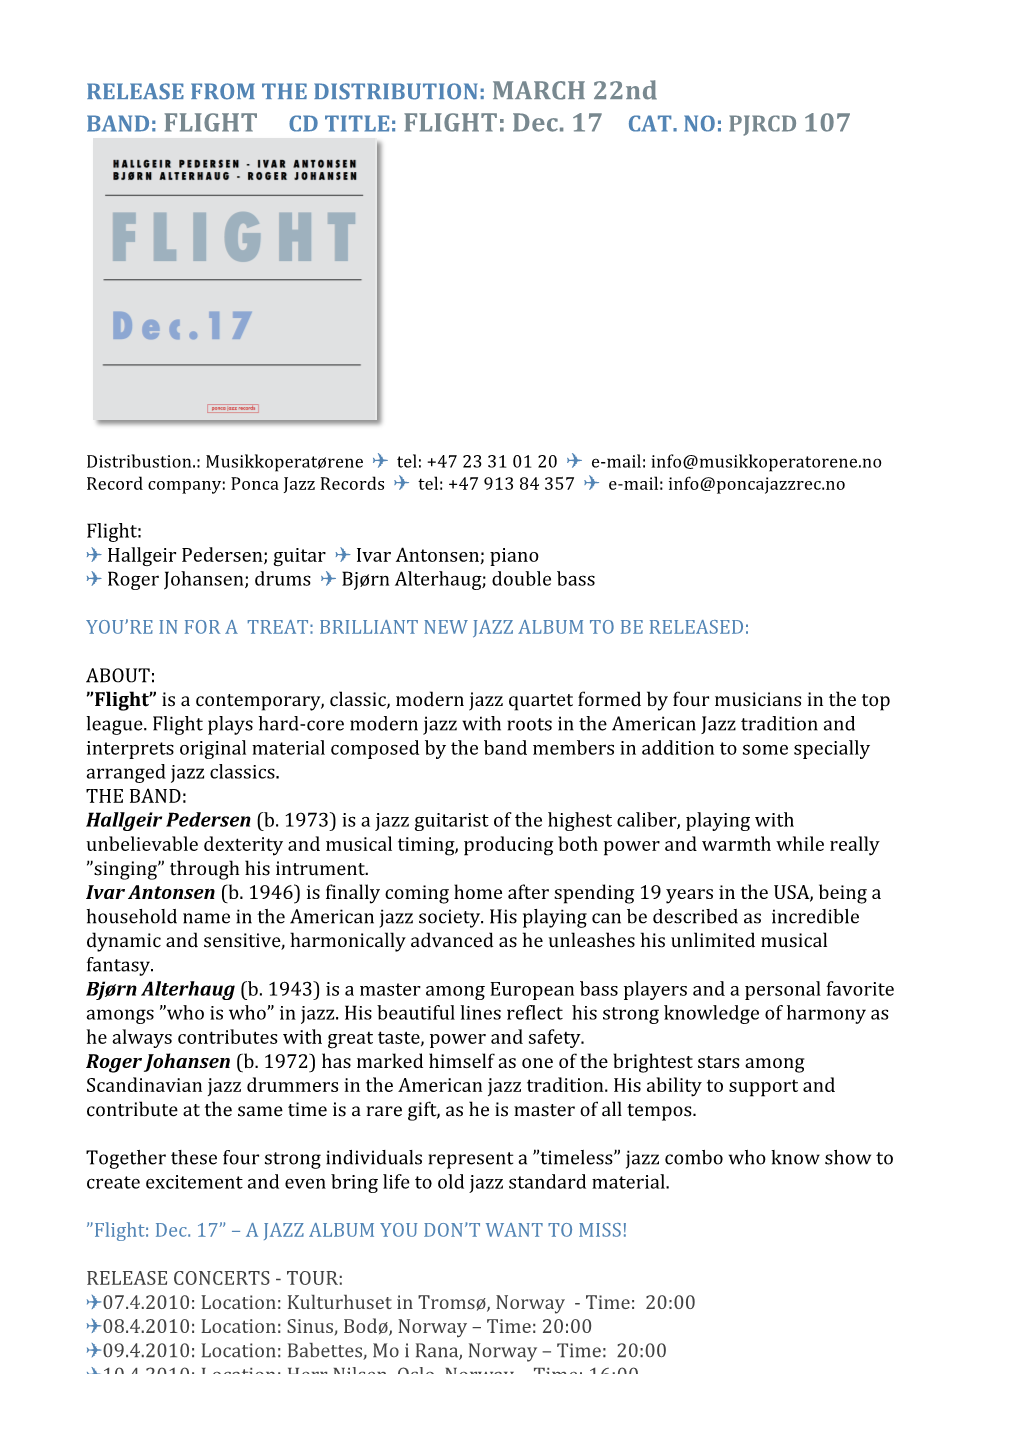 BAND: FLIGHT CD TITLE: FLIGHT: Dec. 17 CAT. NO: PJRCD 107